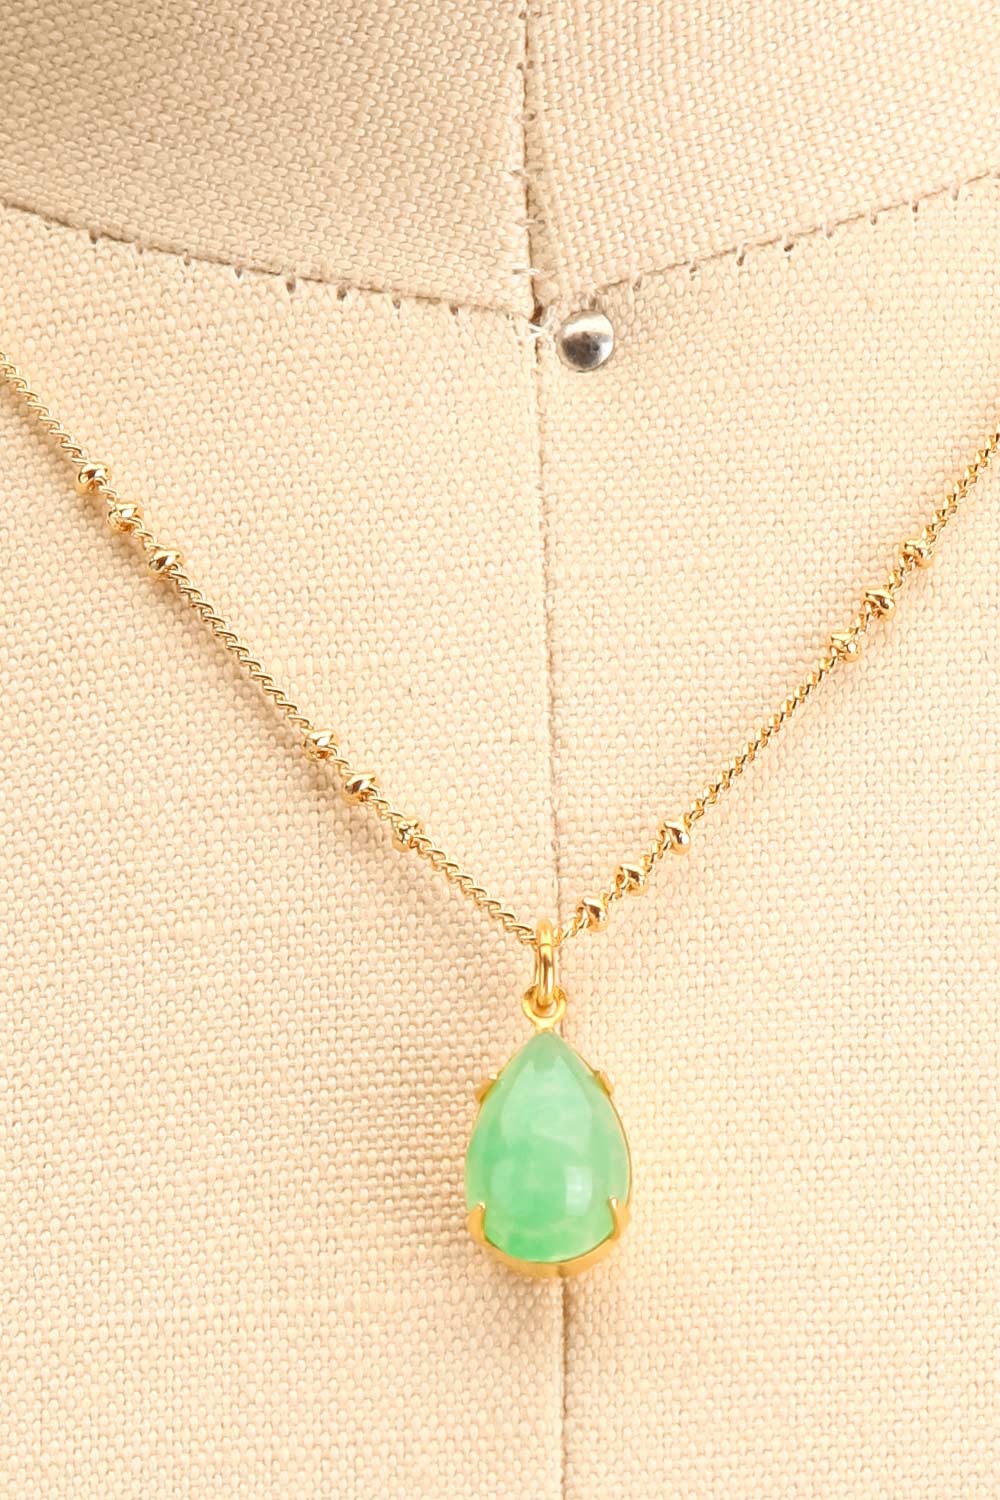 Natalie Dessay Green & Golden Pendant Necklace | La Petite Garçonne close-up